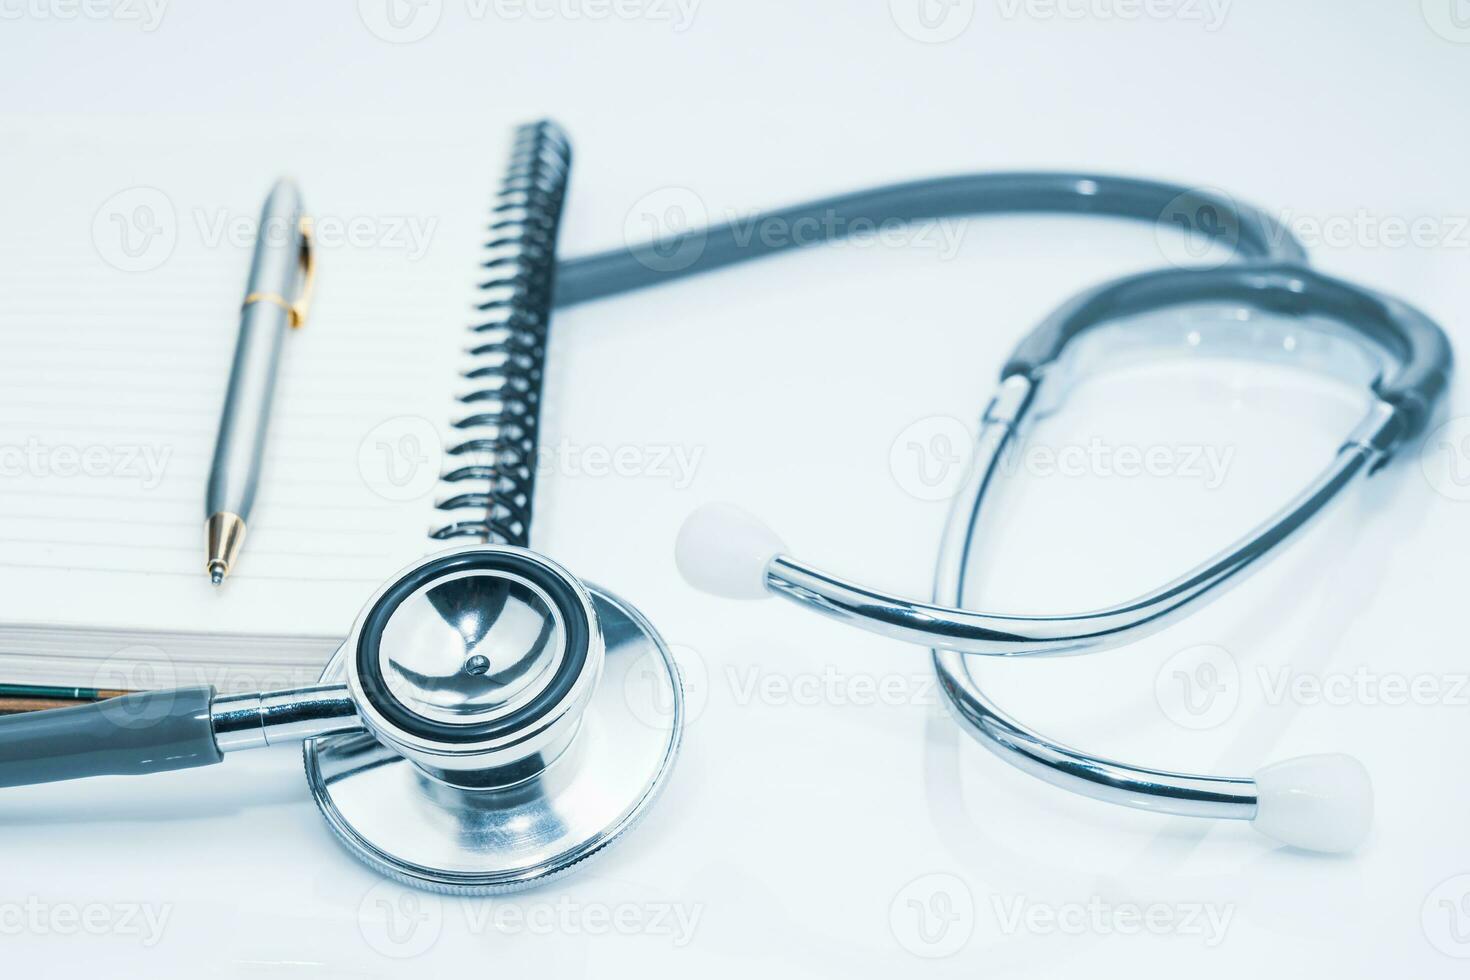 stéthoscope médical pour examen médical et bloc-notes sur table photo